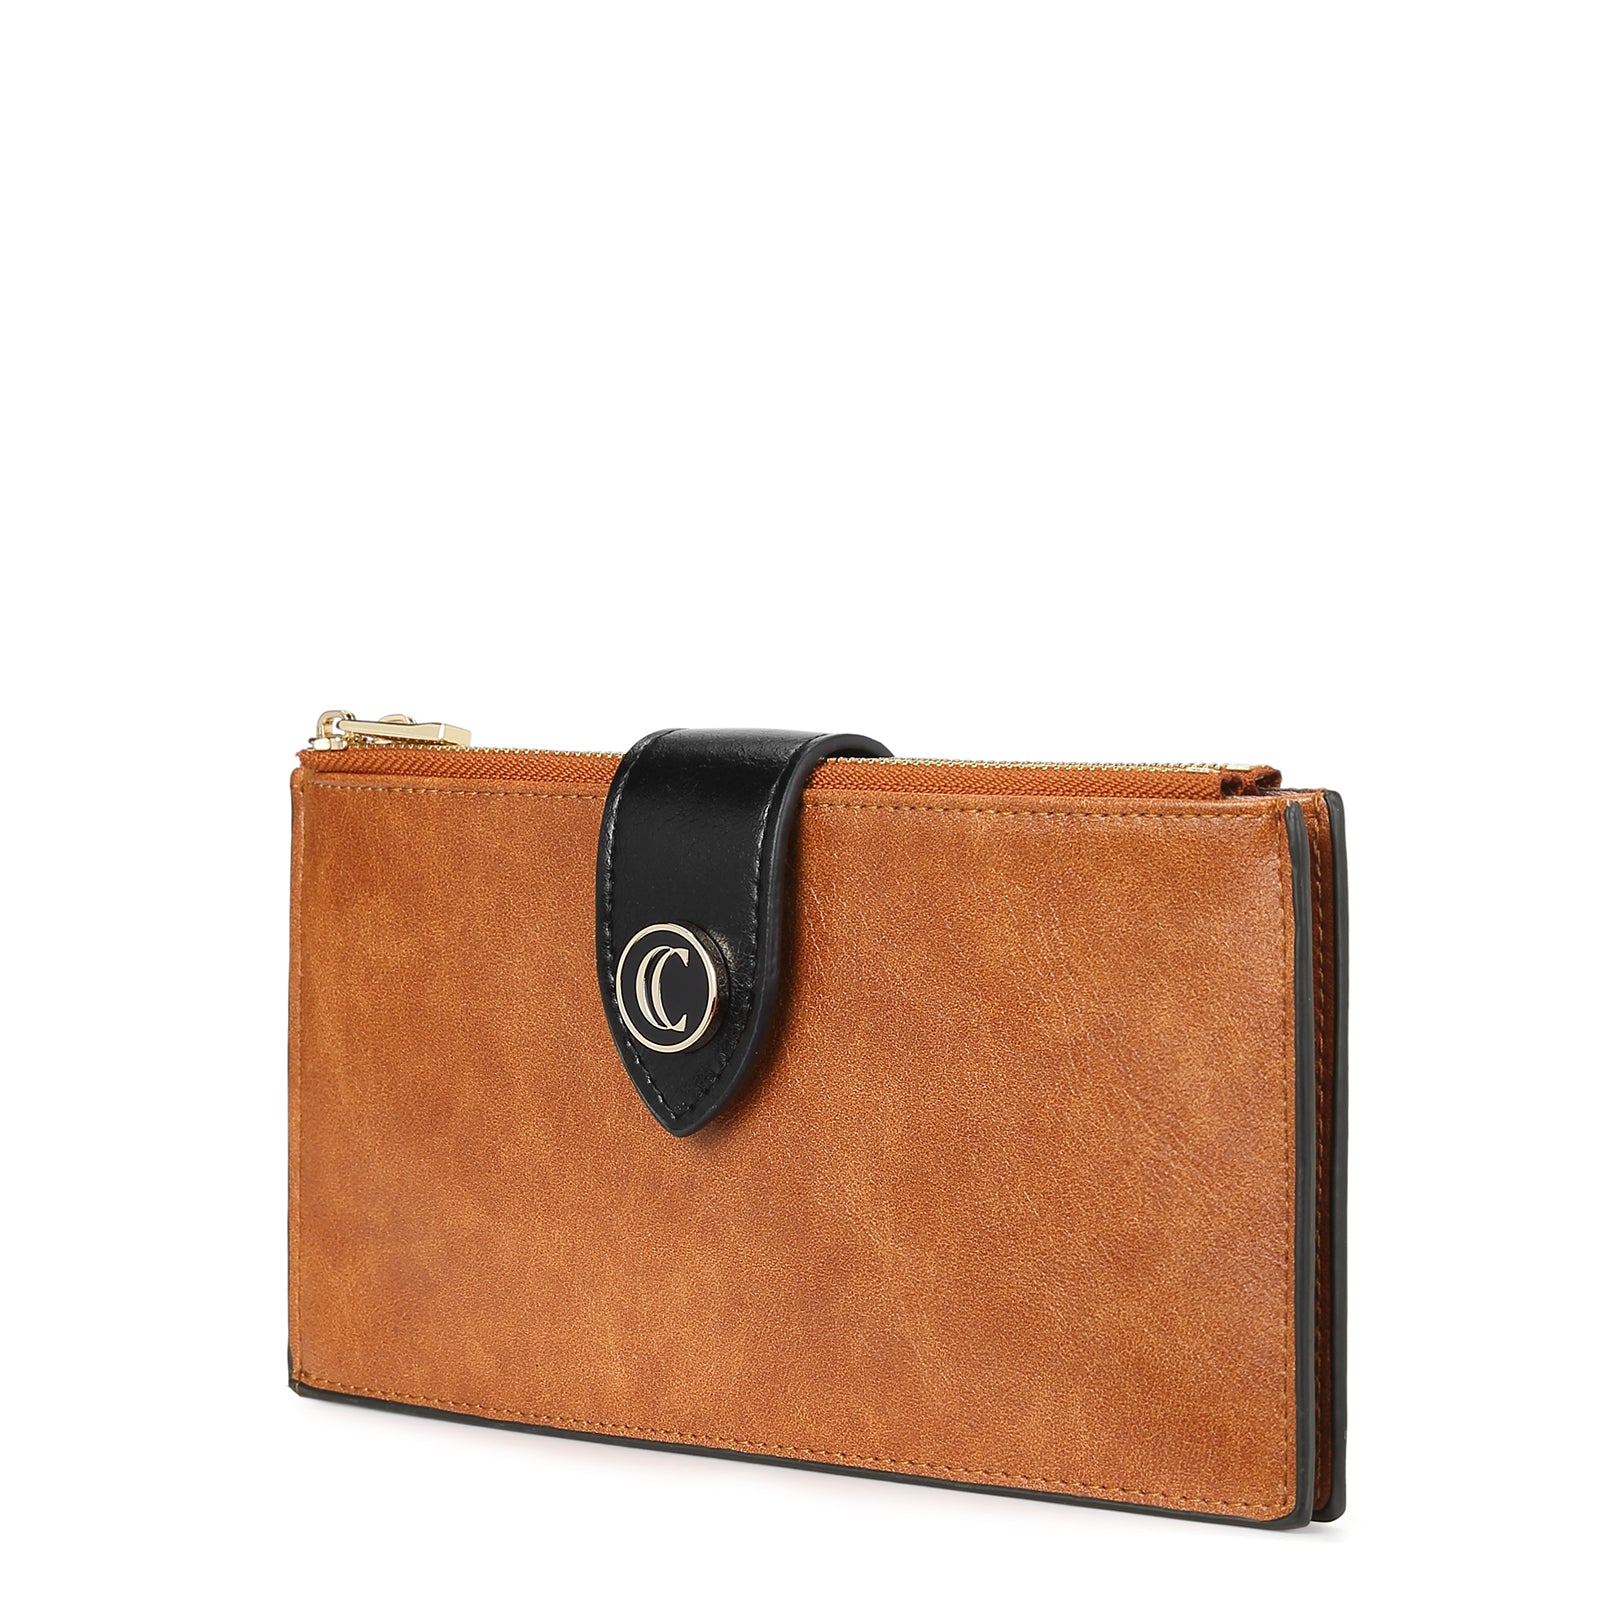 Echo Slim Women's Bifold Leather Wallet With ID Window